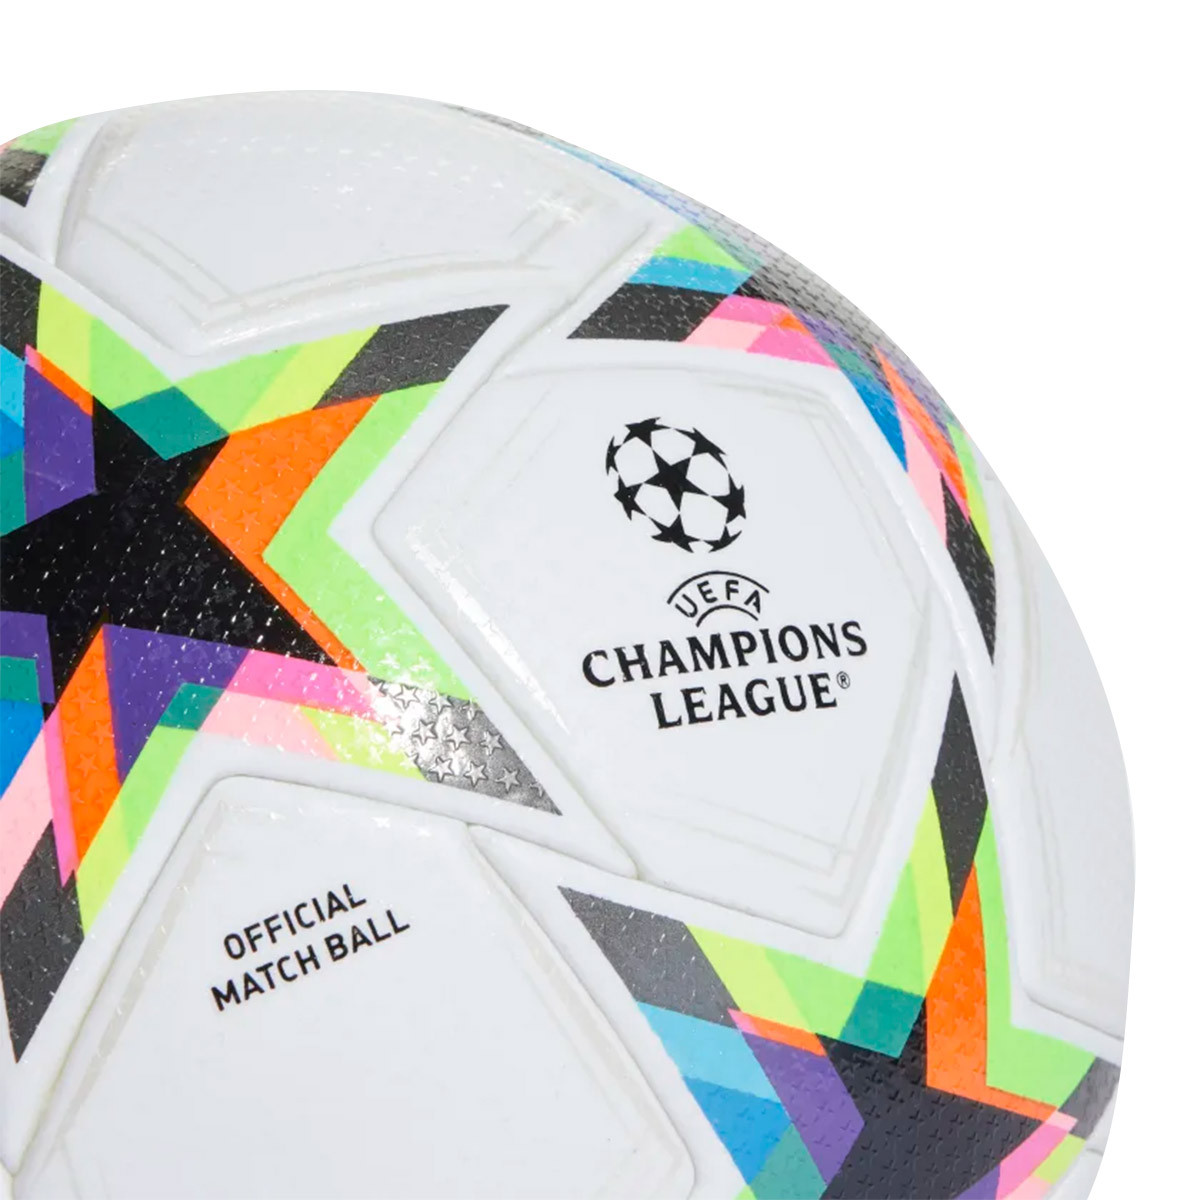 Le Meilleur du Football - 🚨 OFFICIEL ! Adidas dévoile le nouveau ballon de  la Ligue des Champions qui sera utilisé à partir de ce soir 😍🔥